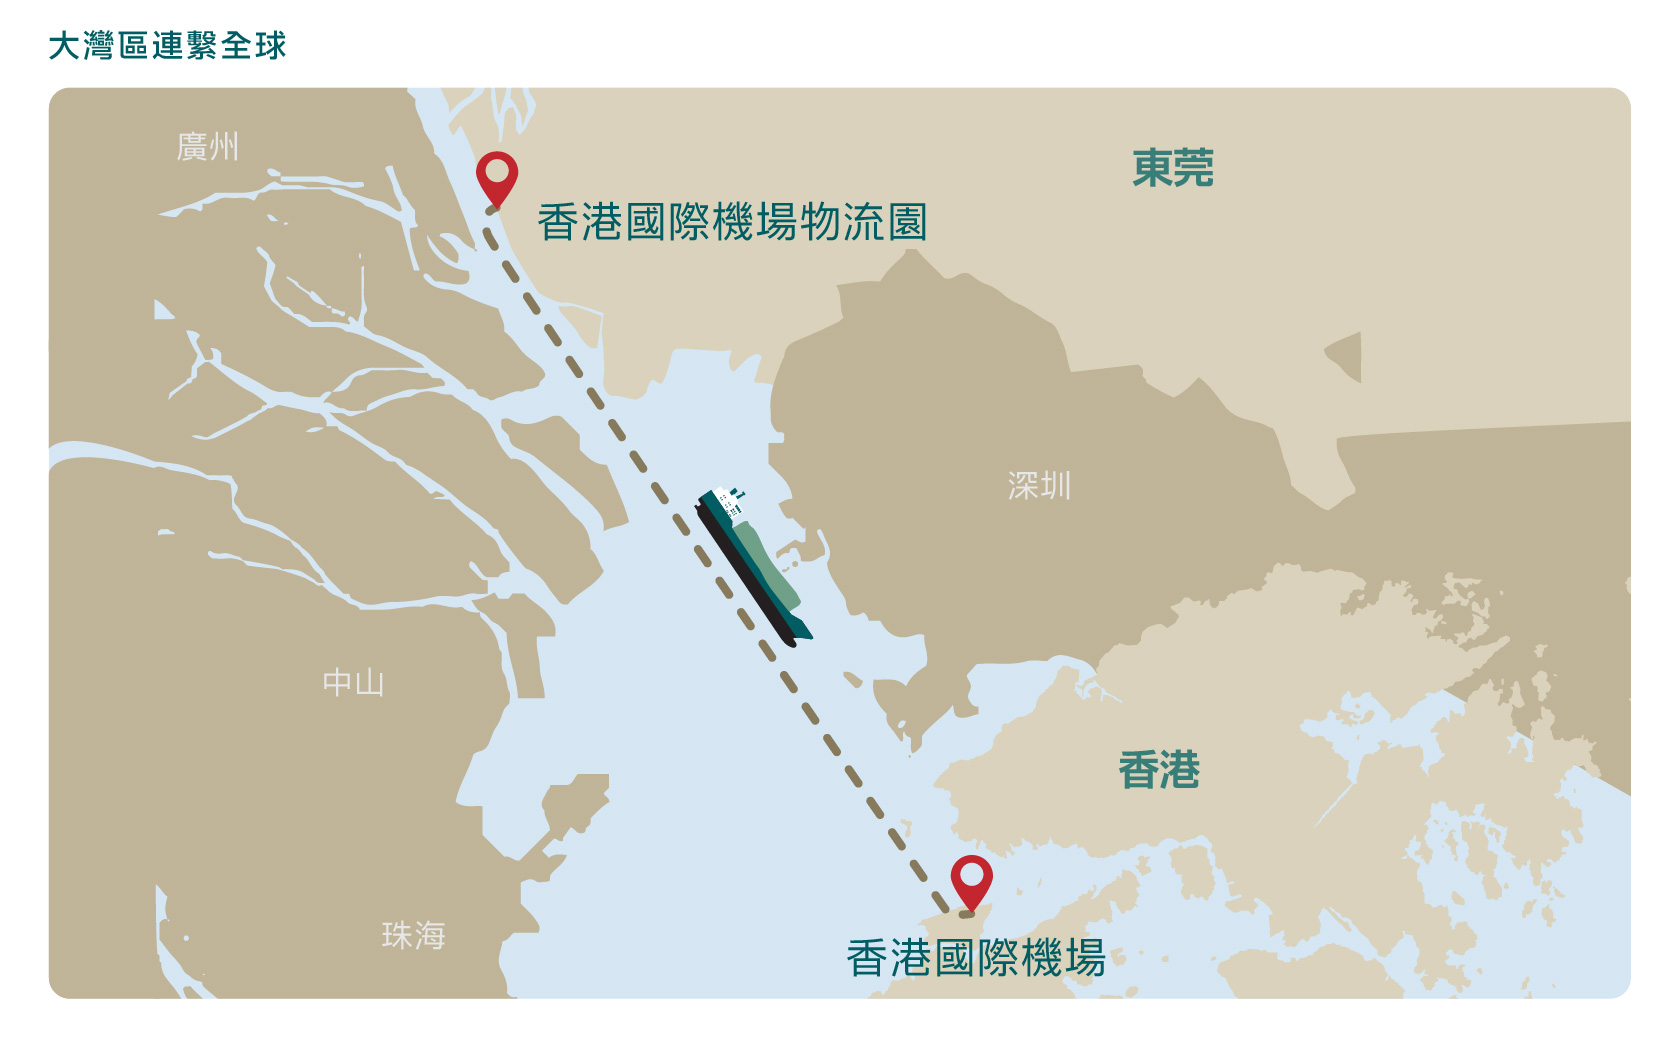 此海空聯運路線能把貨物從大灣區核心地區直接運往香港國際機場。